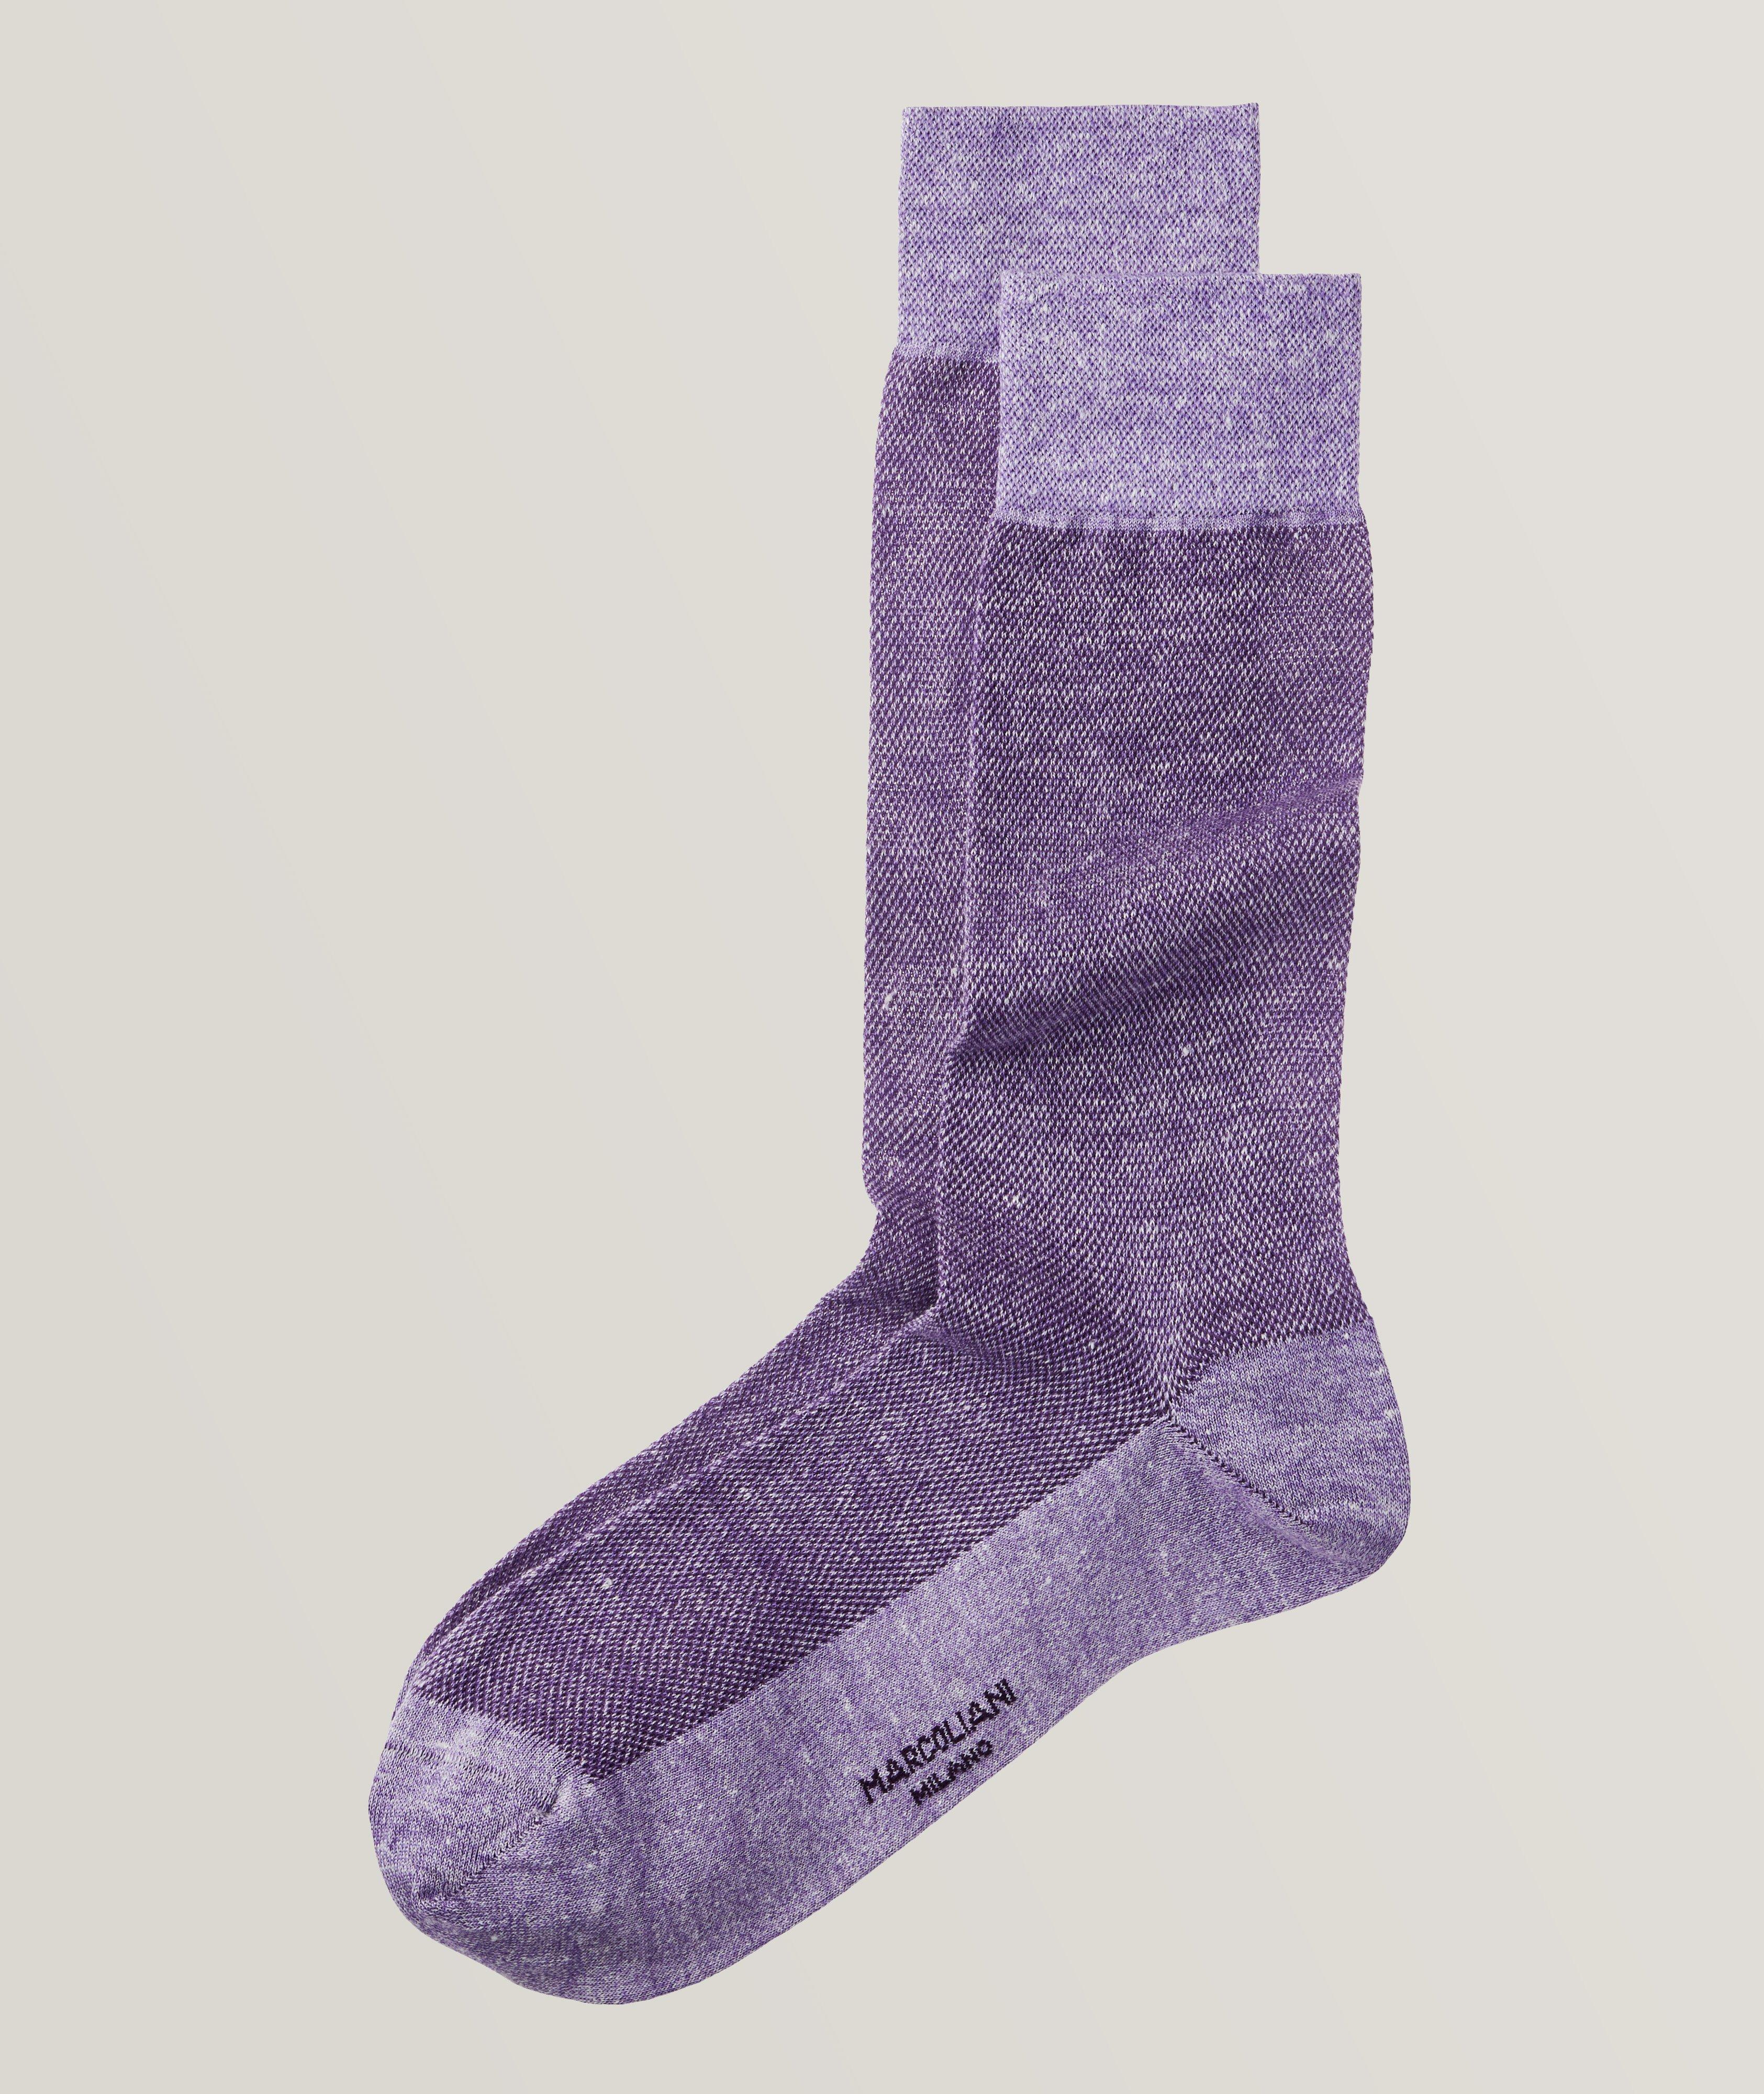 Linen-Cotton Piqué Crew Socks